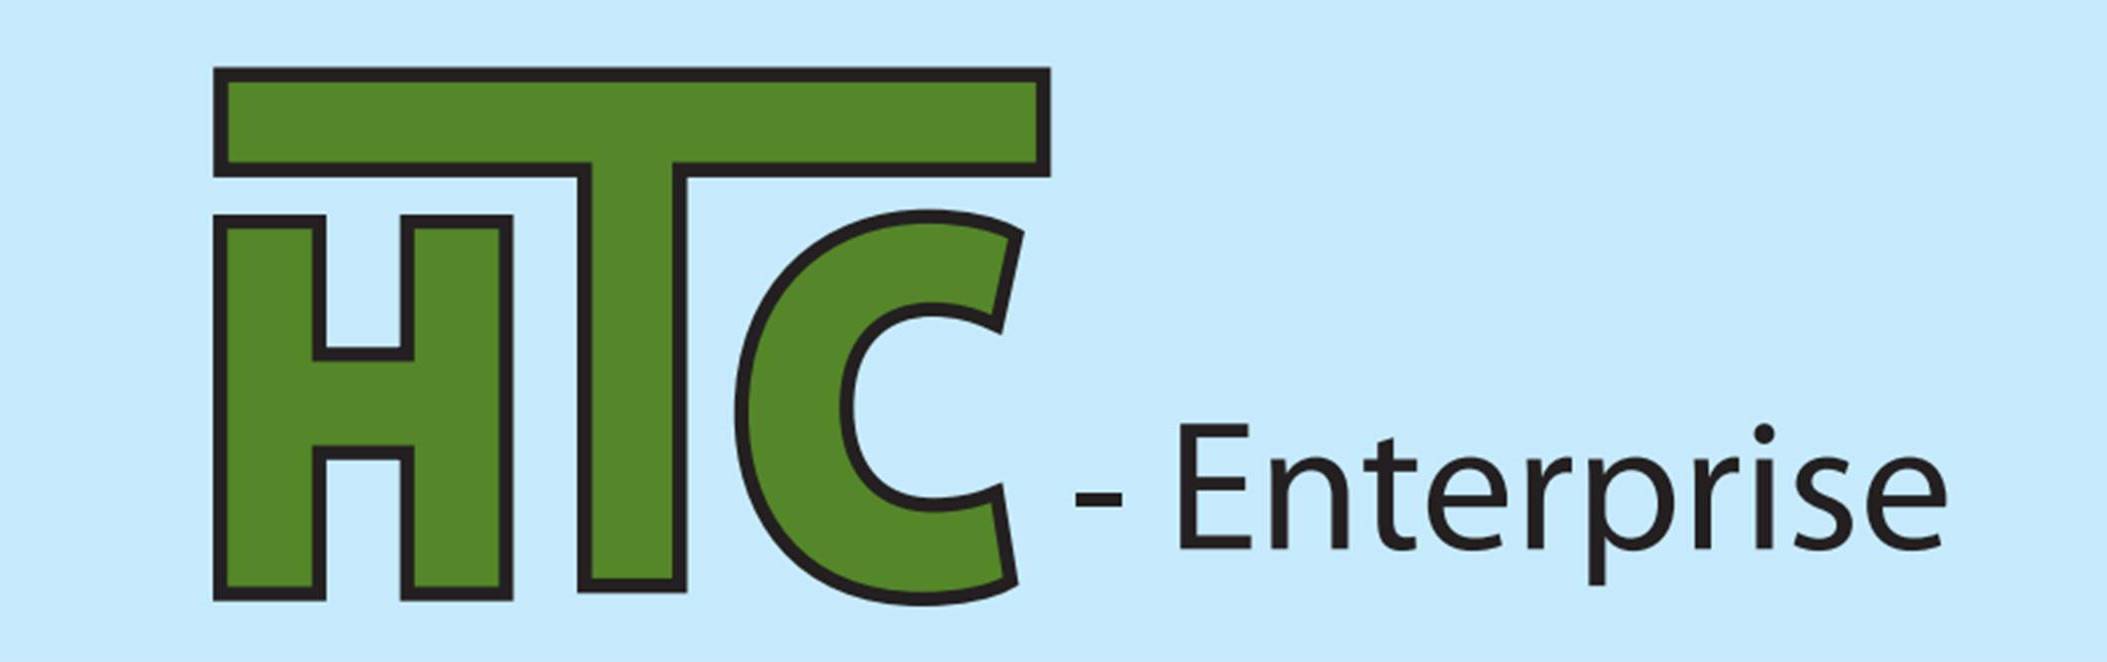 HTC-Enterprise